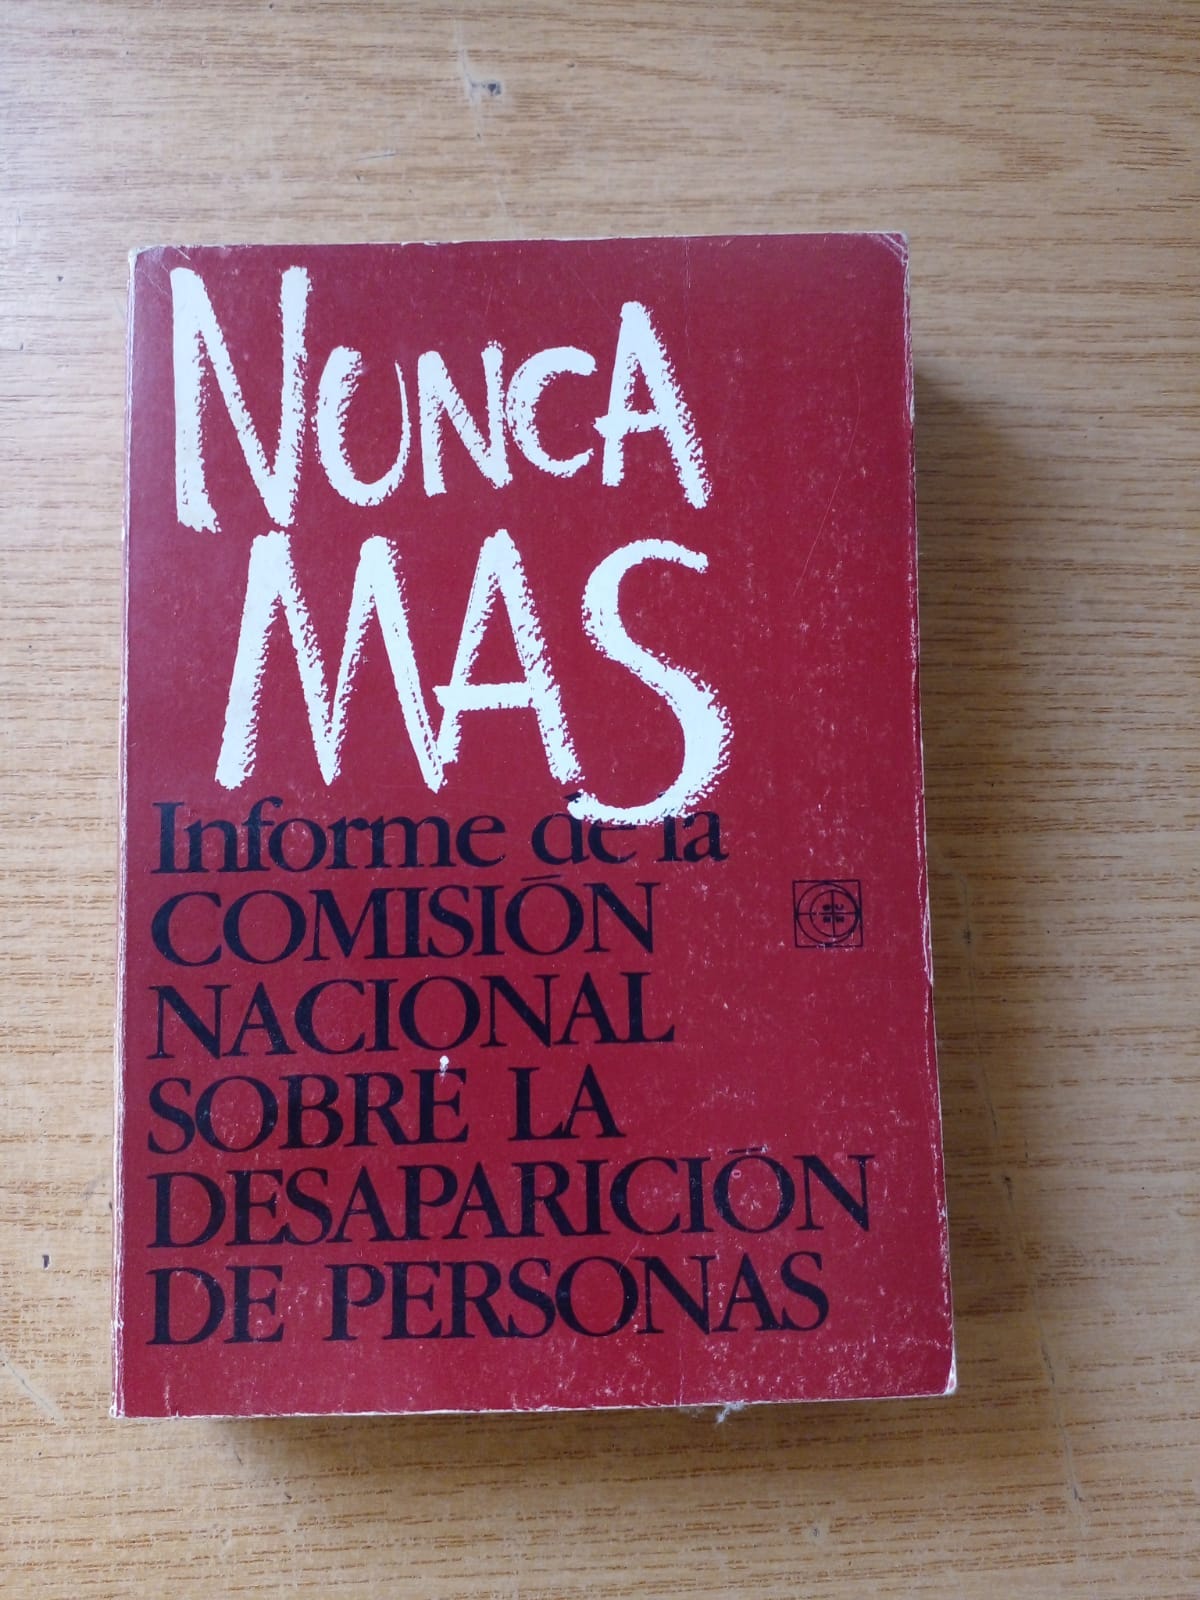 Livro com capa vermelha, com título em espanhol "Nunca mas"